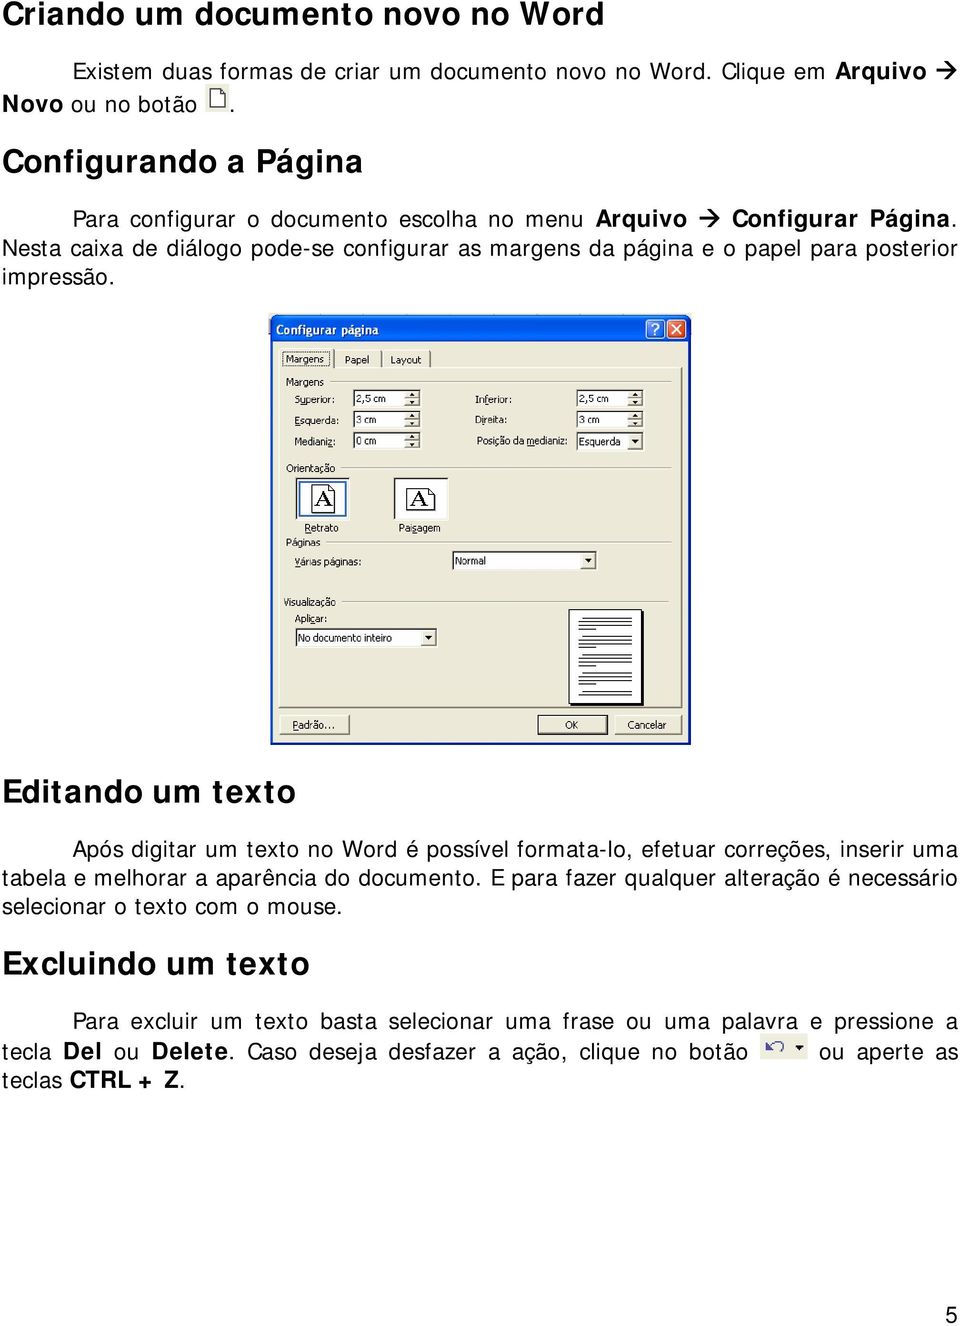 Nesta caixa de diálogo pode-se configurar as margens da página e o papel para posterior impressão.